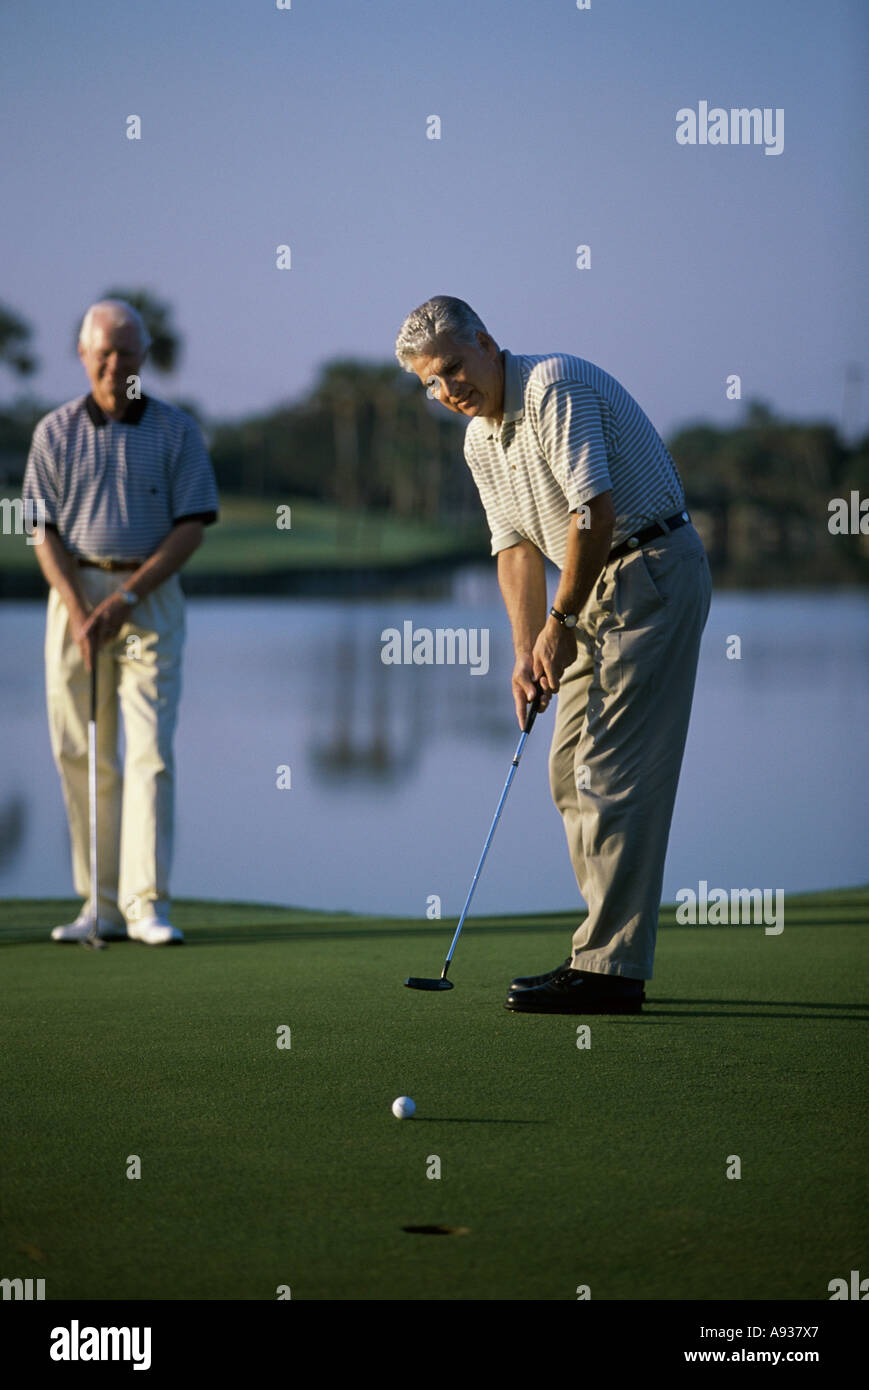 Dos altos hombres jugando al golf Foto de stock